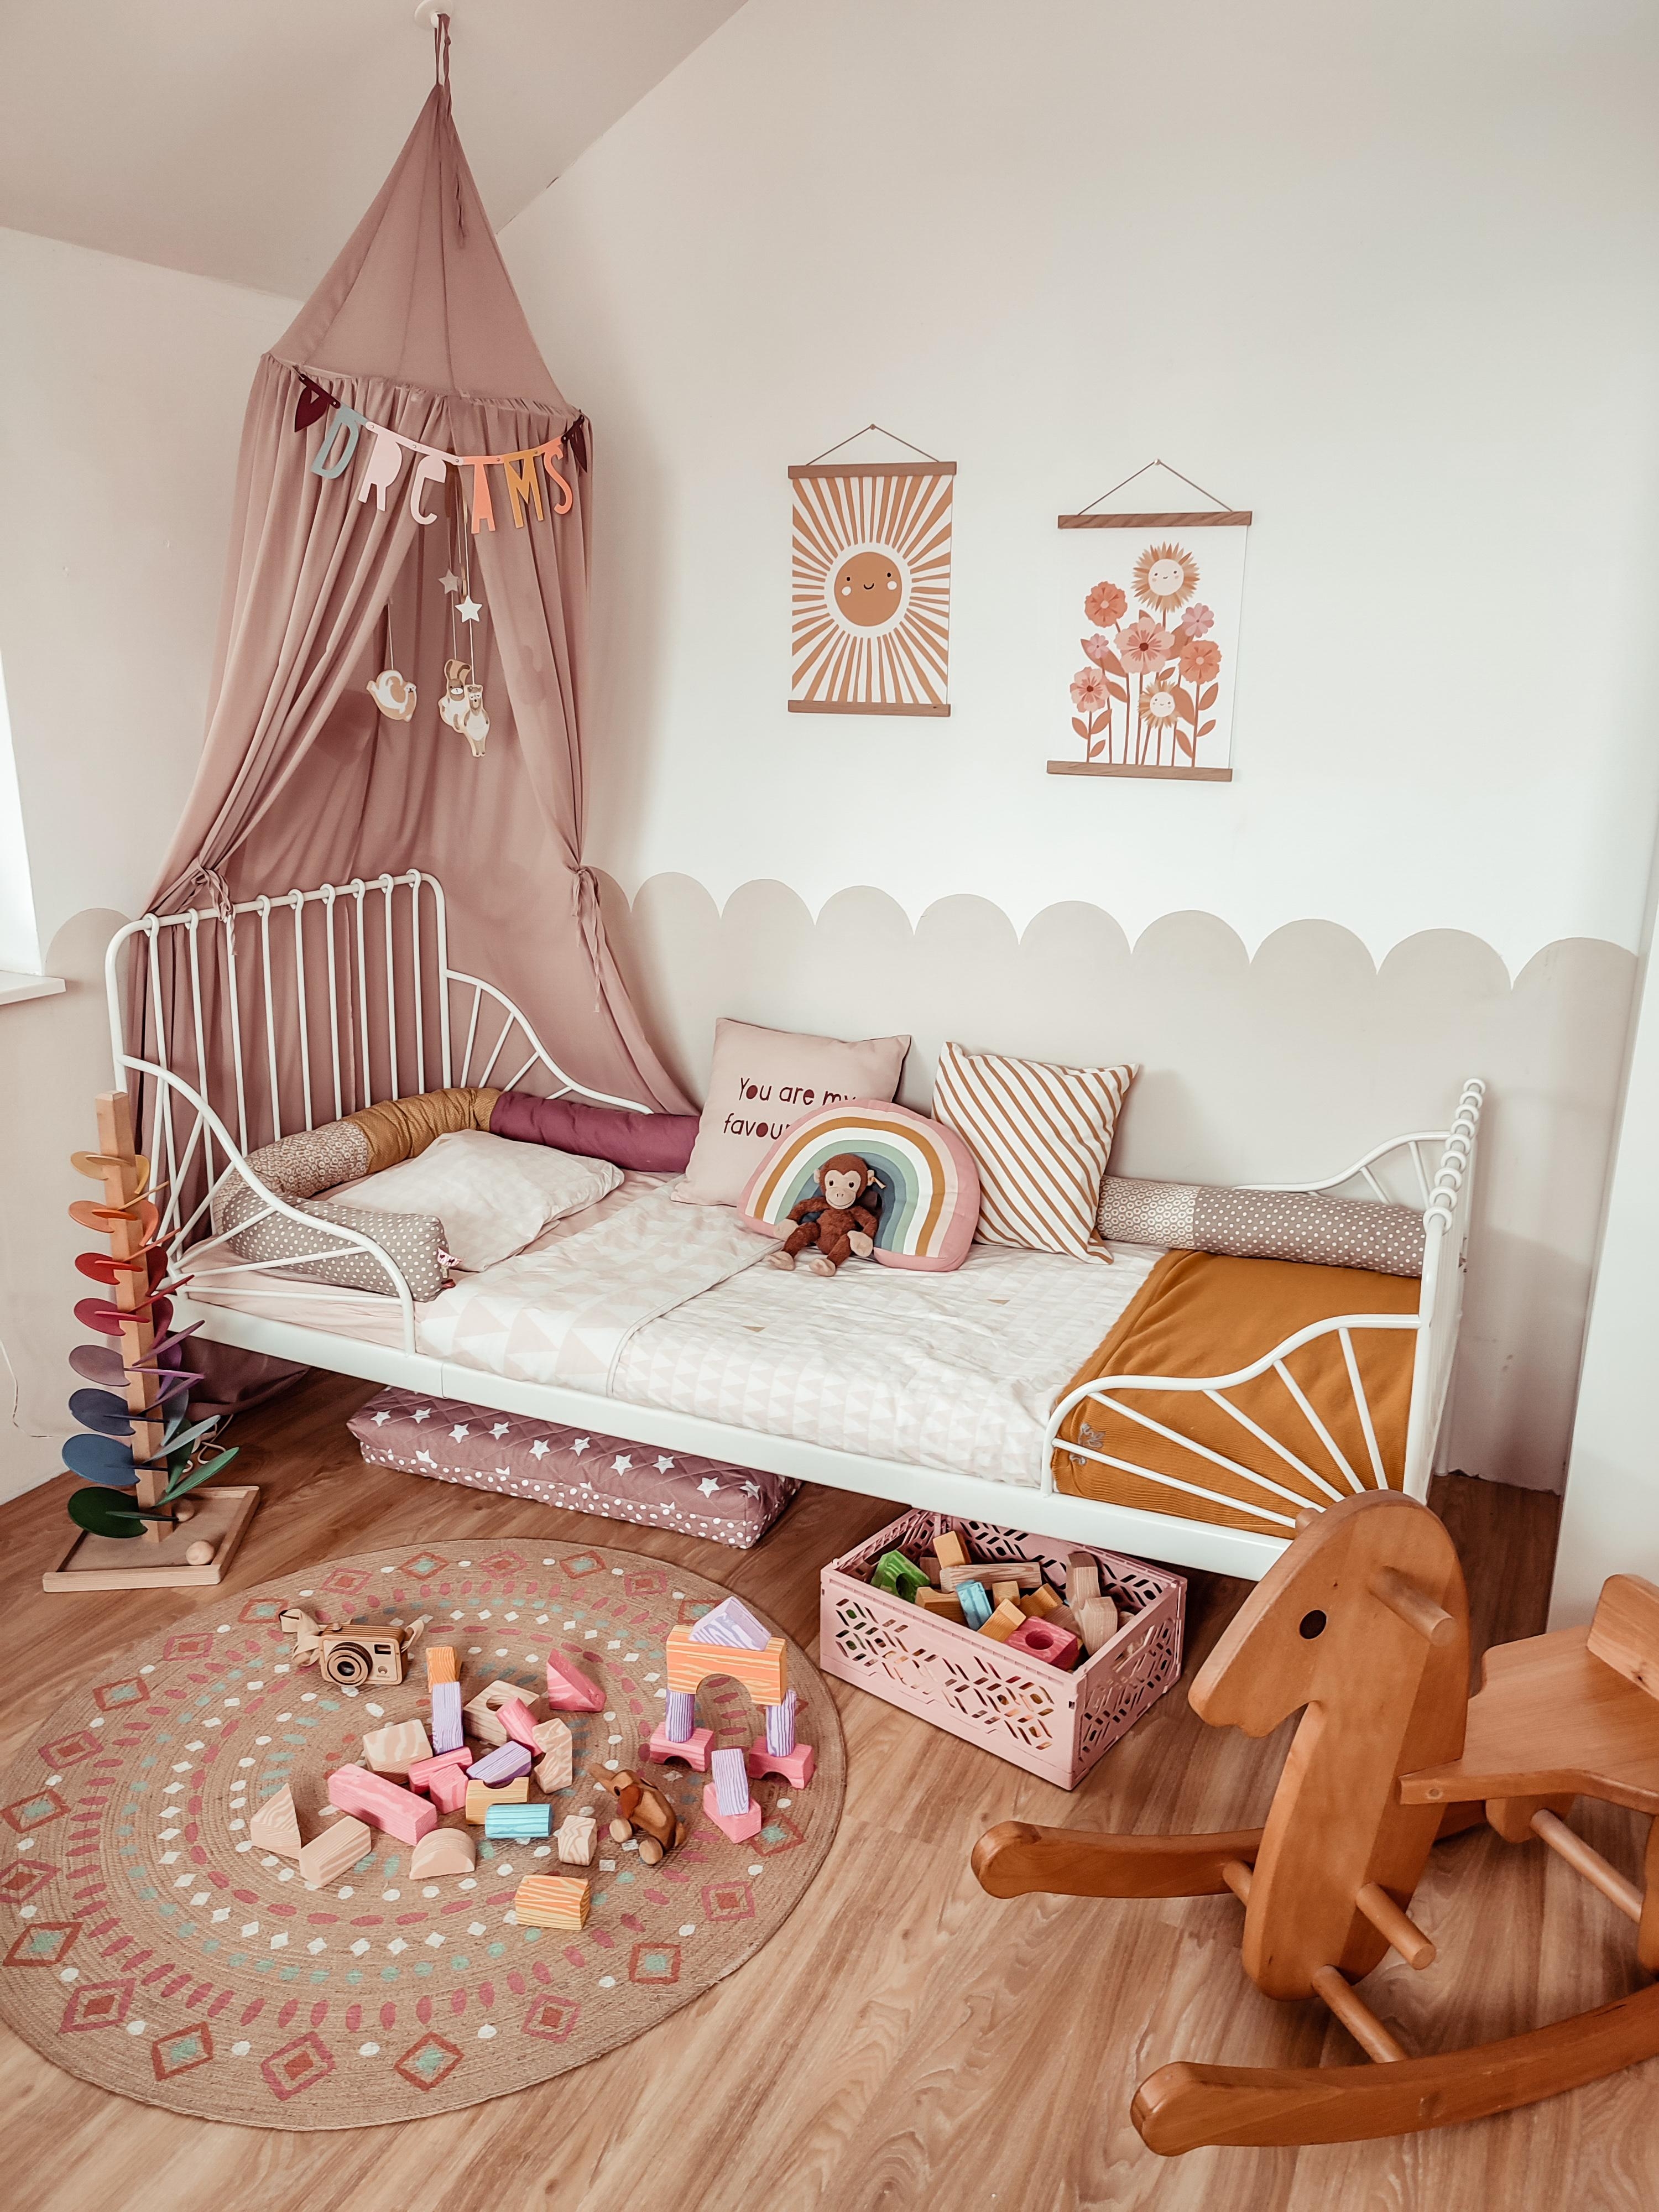 Neue Poster im Kinderzimmer 🥰
#kidsrooms #kinderzimmer #mädchenzimmer #poster #walldecor #wallart #Bilder 